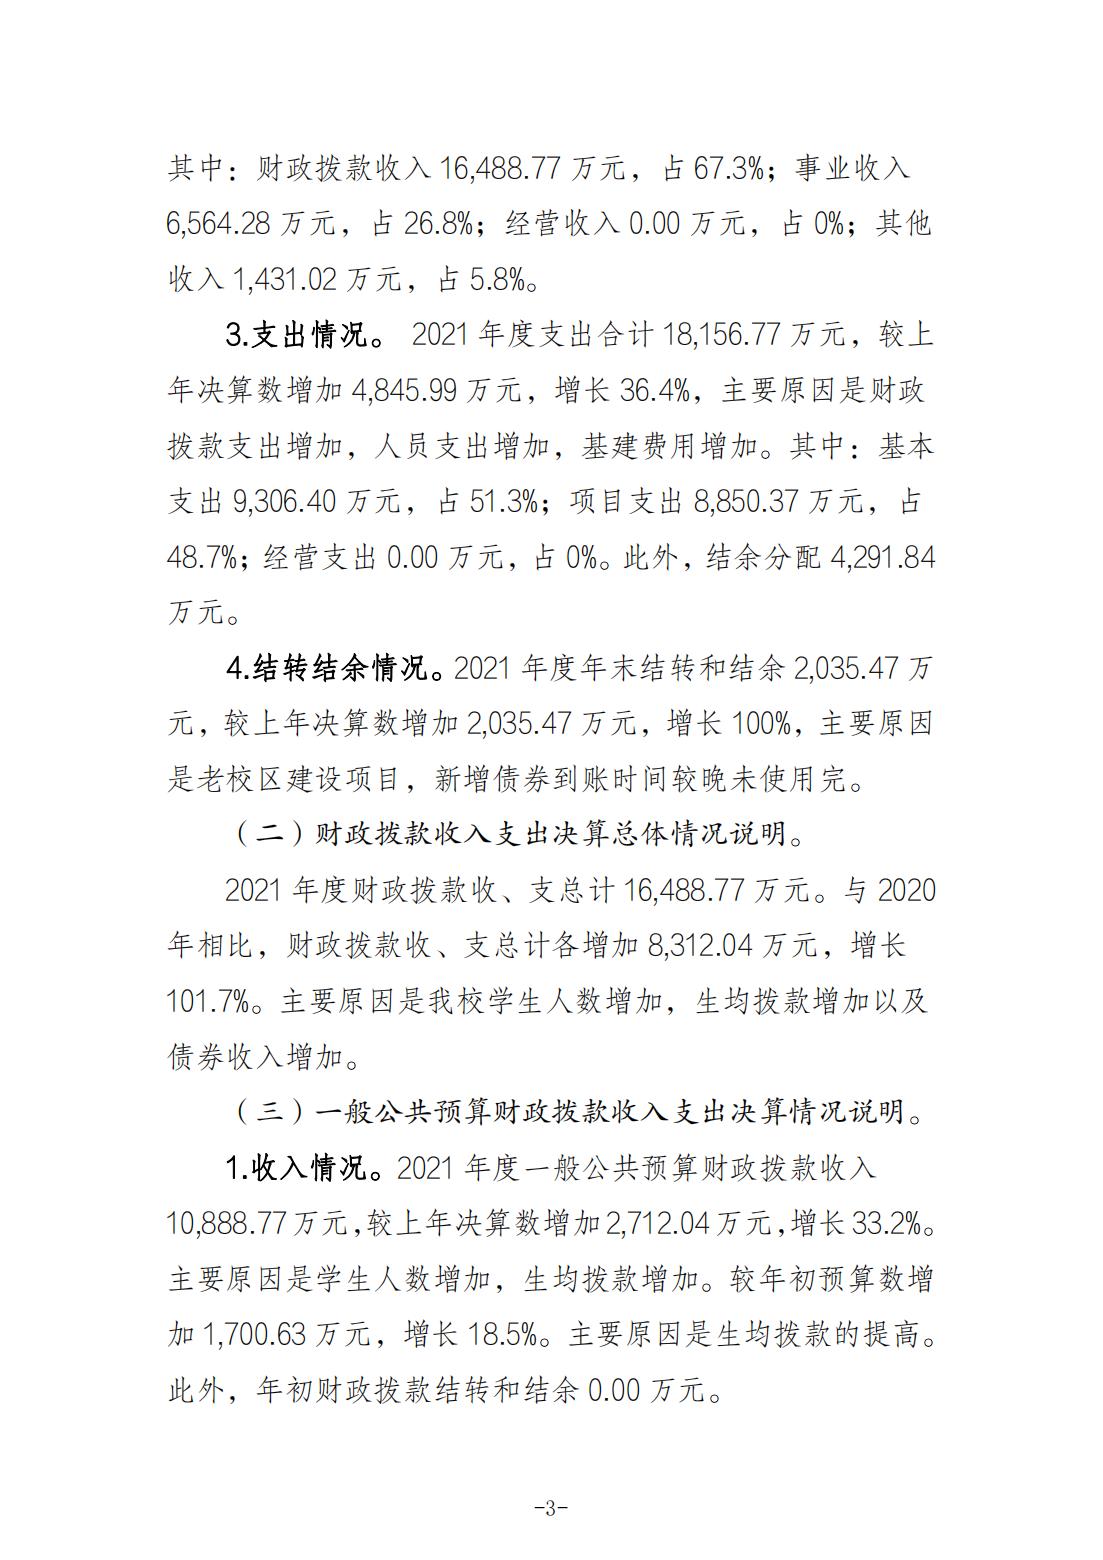 重庆城市职业学院2021年度部门决算情况说明_02.jpg